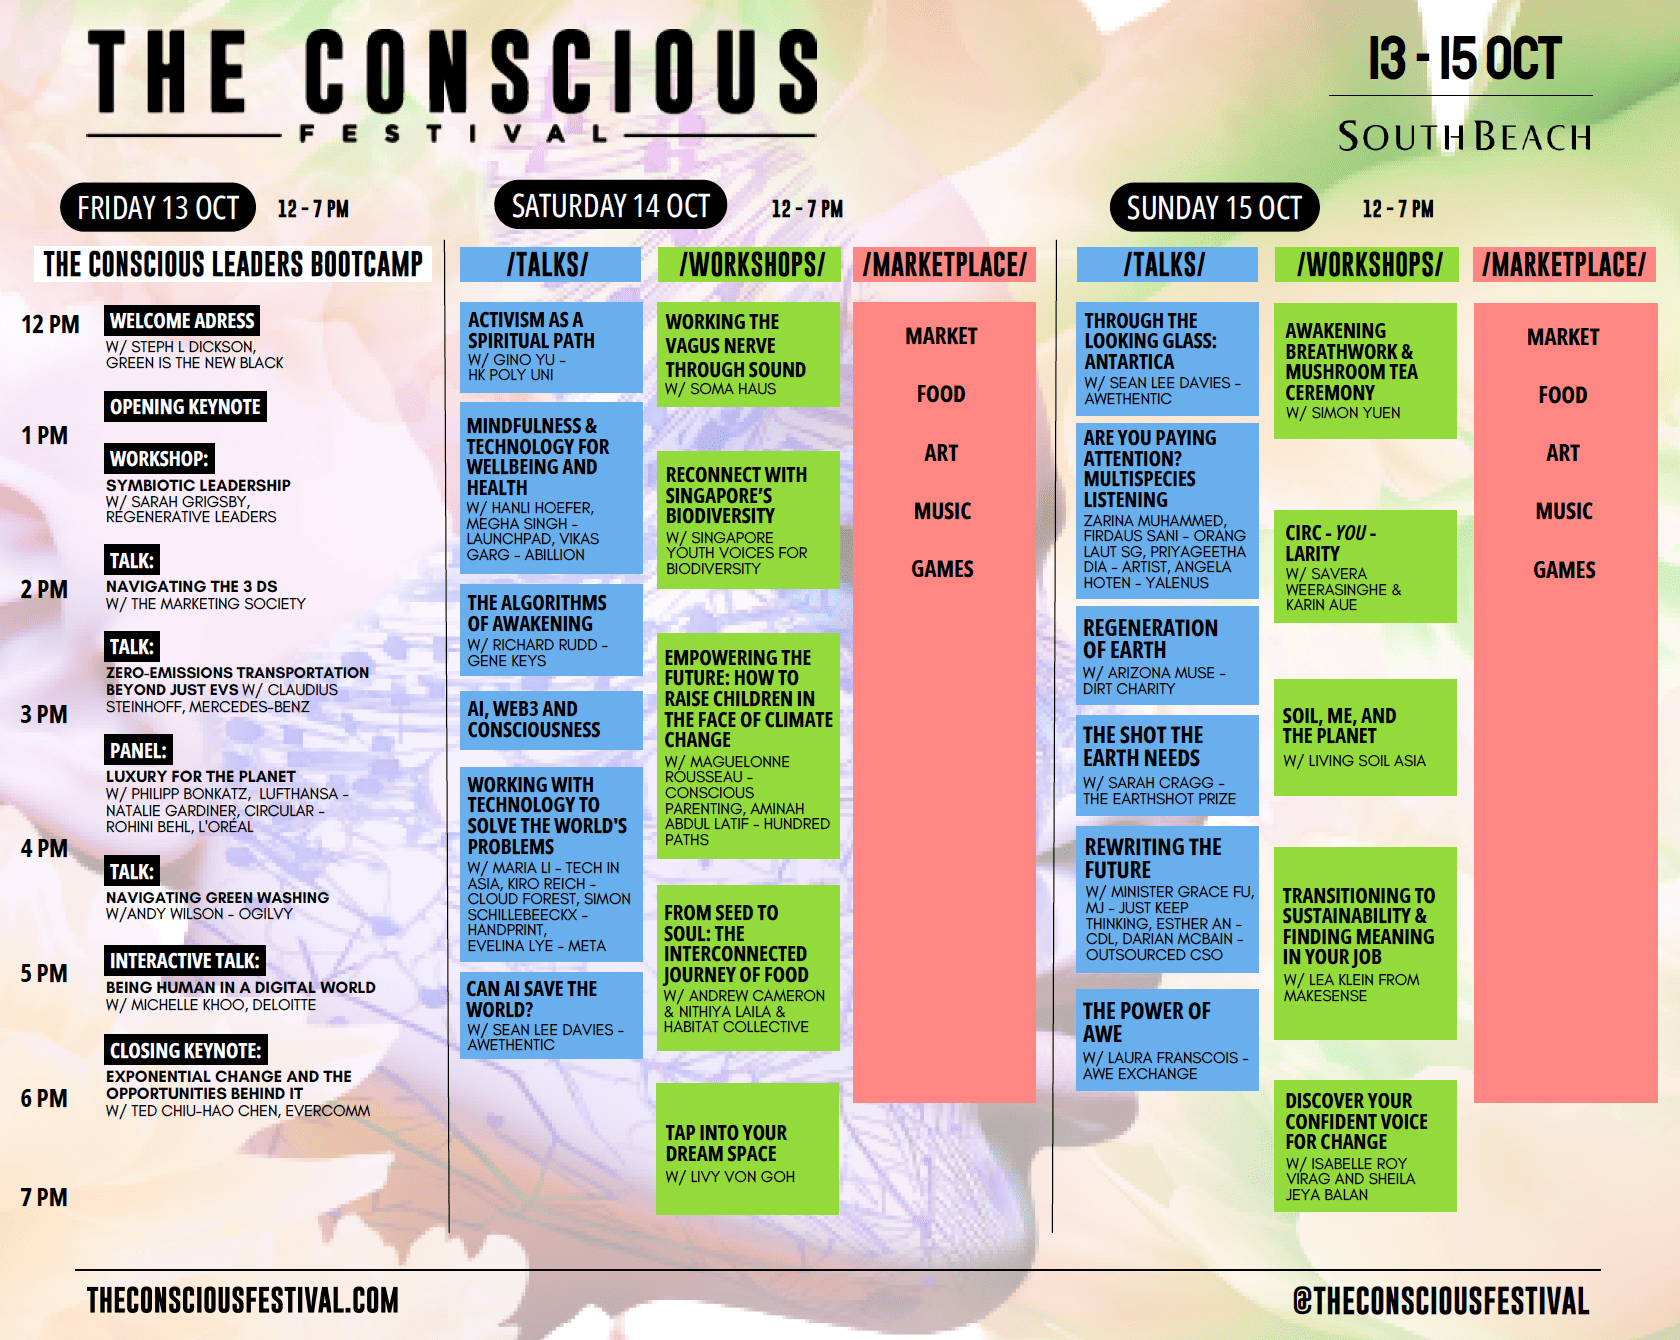 The Conscious Festival agenda